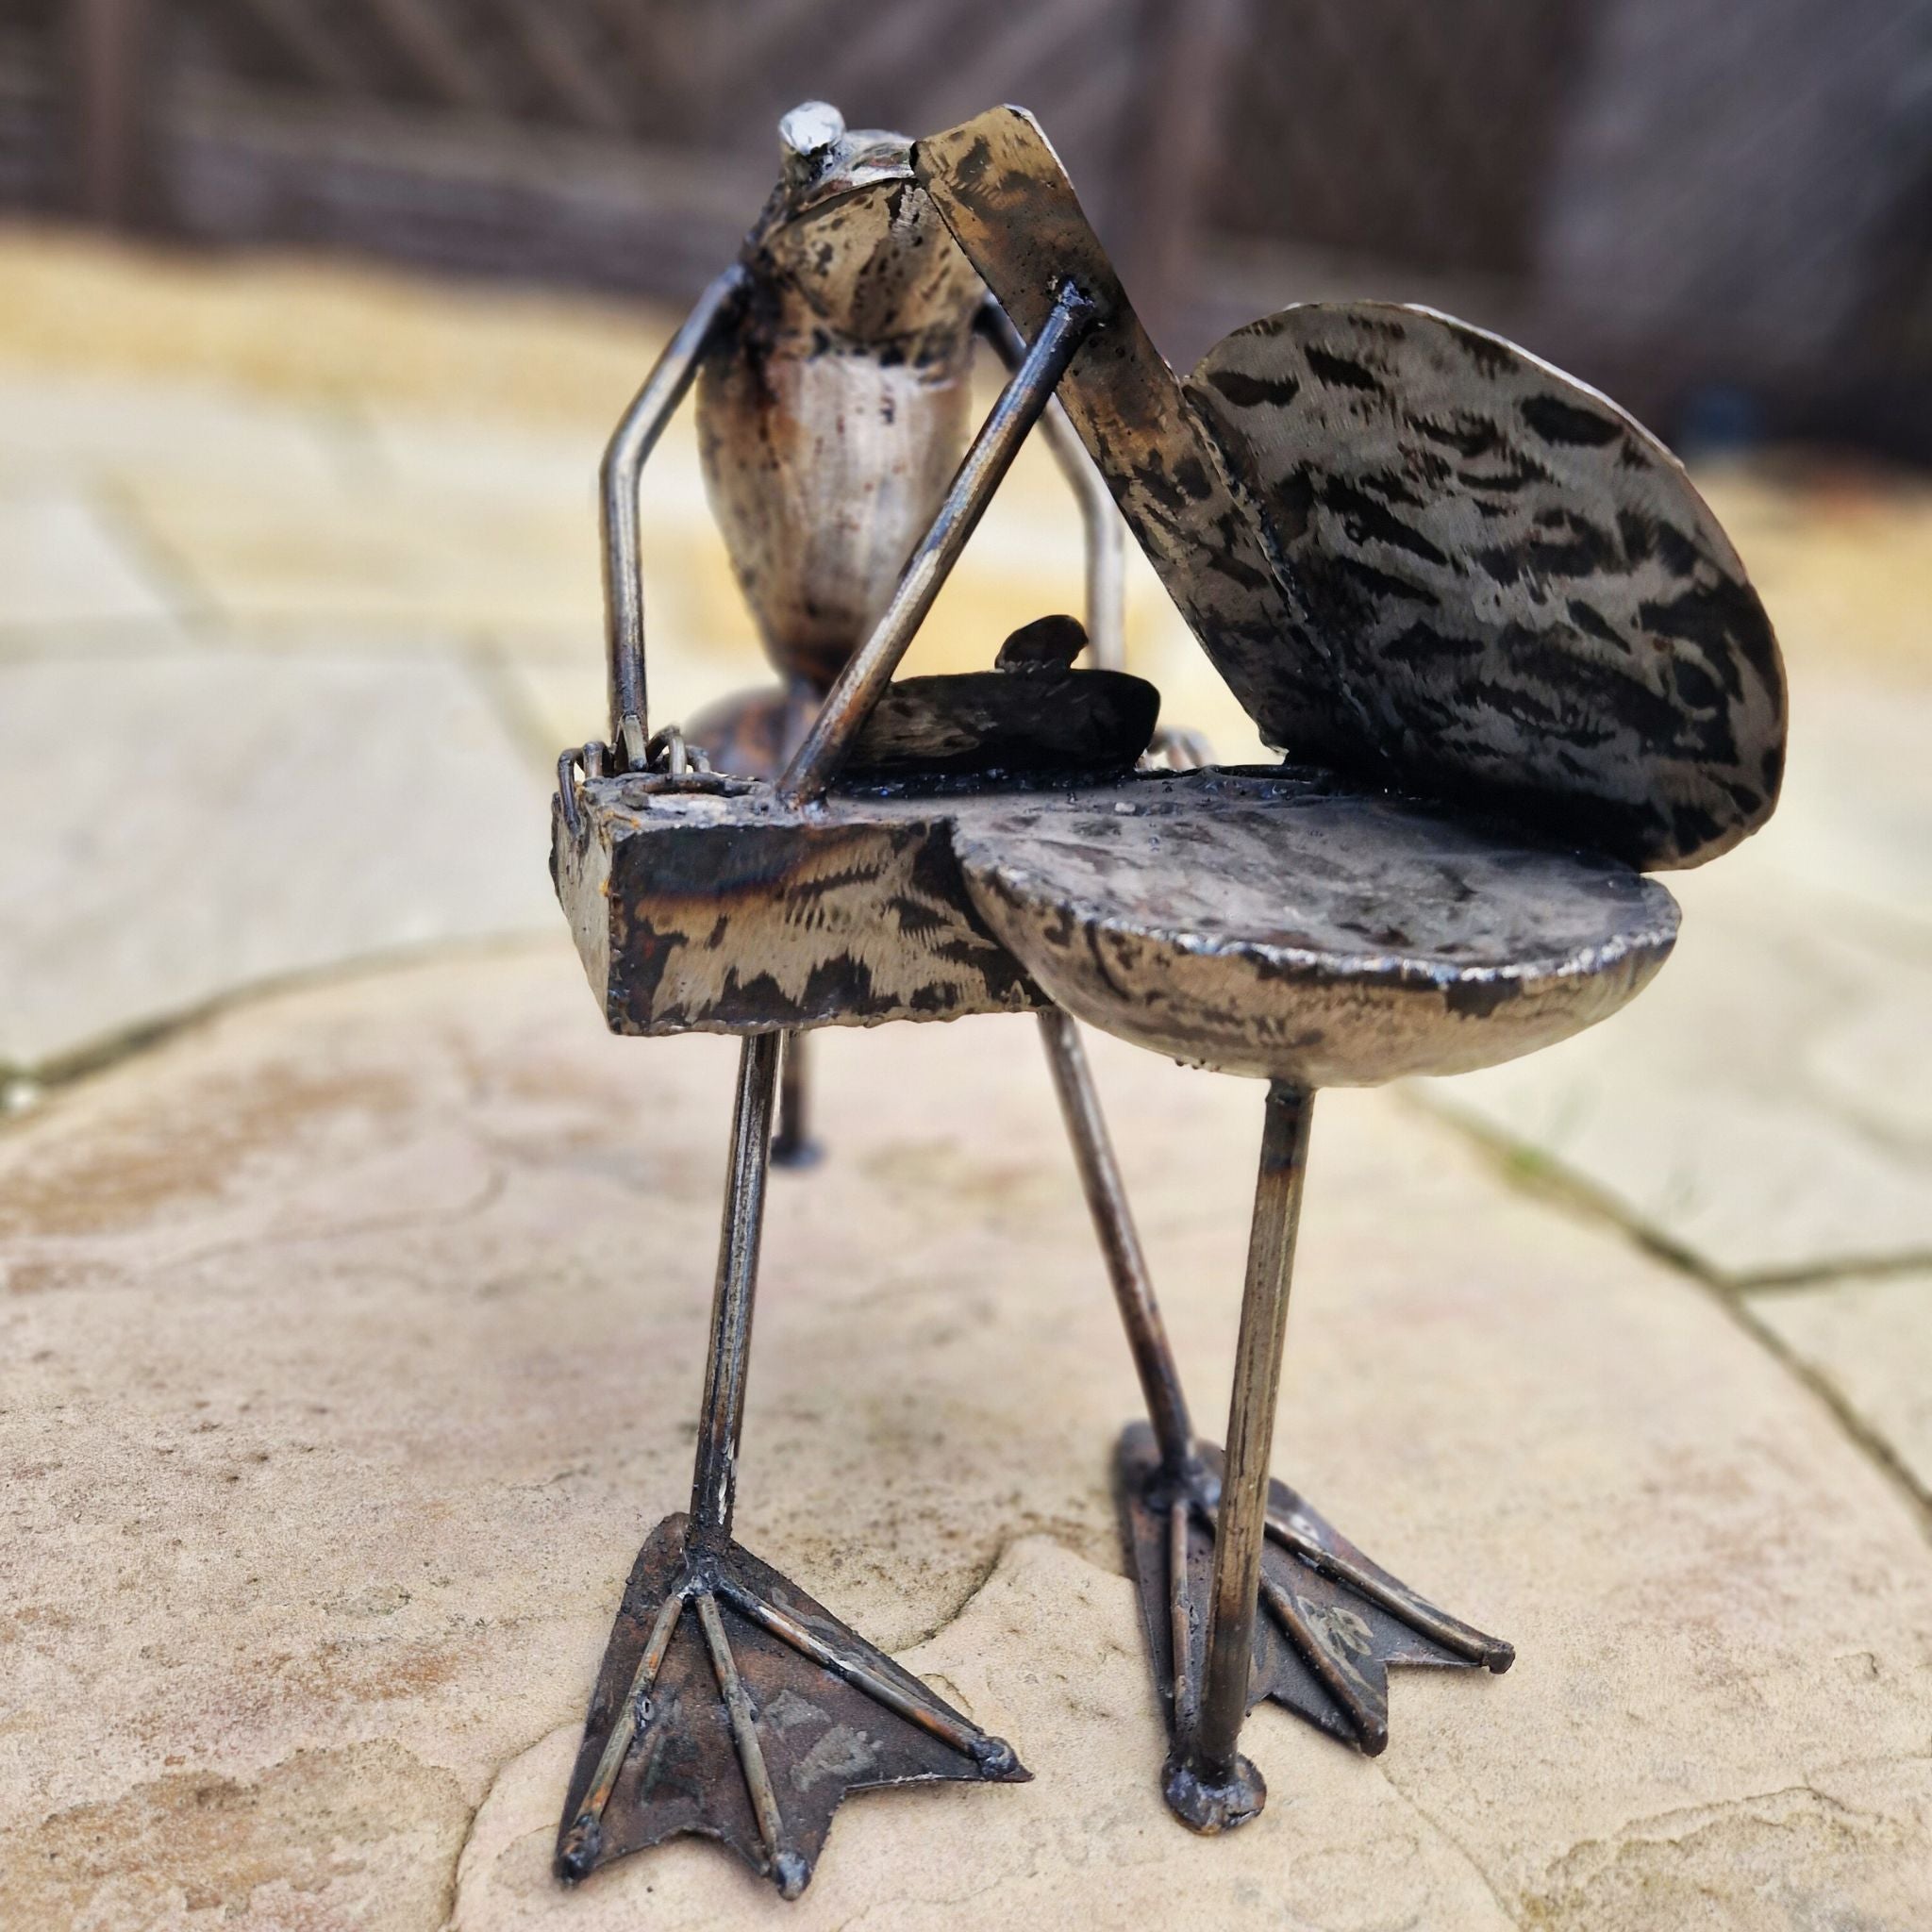 Piano Frog - Pangea Sculptures